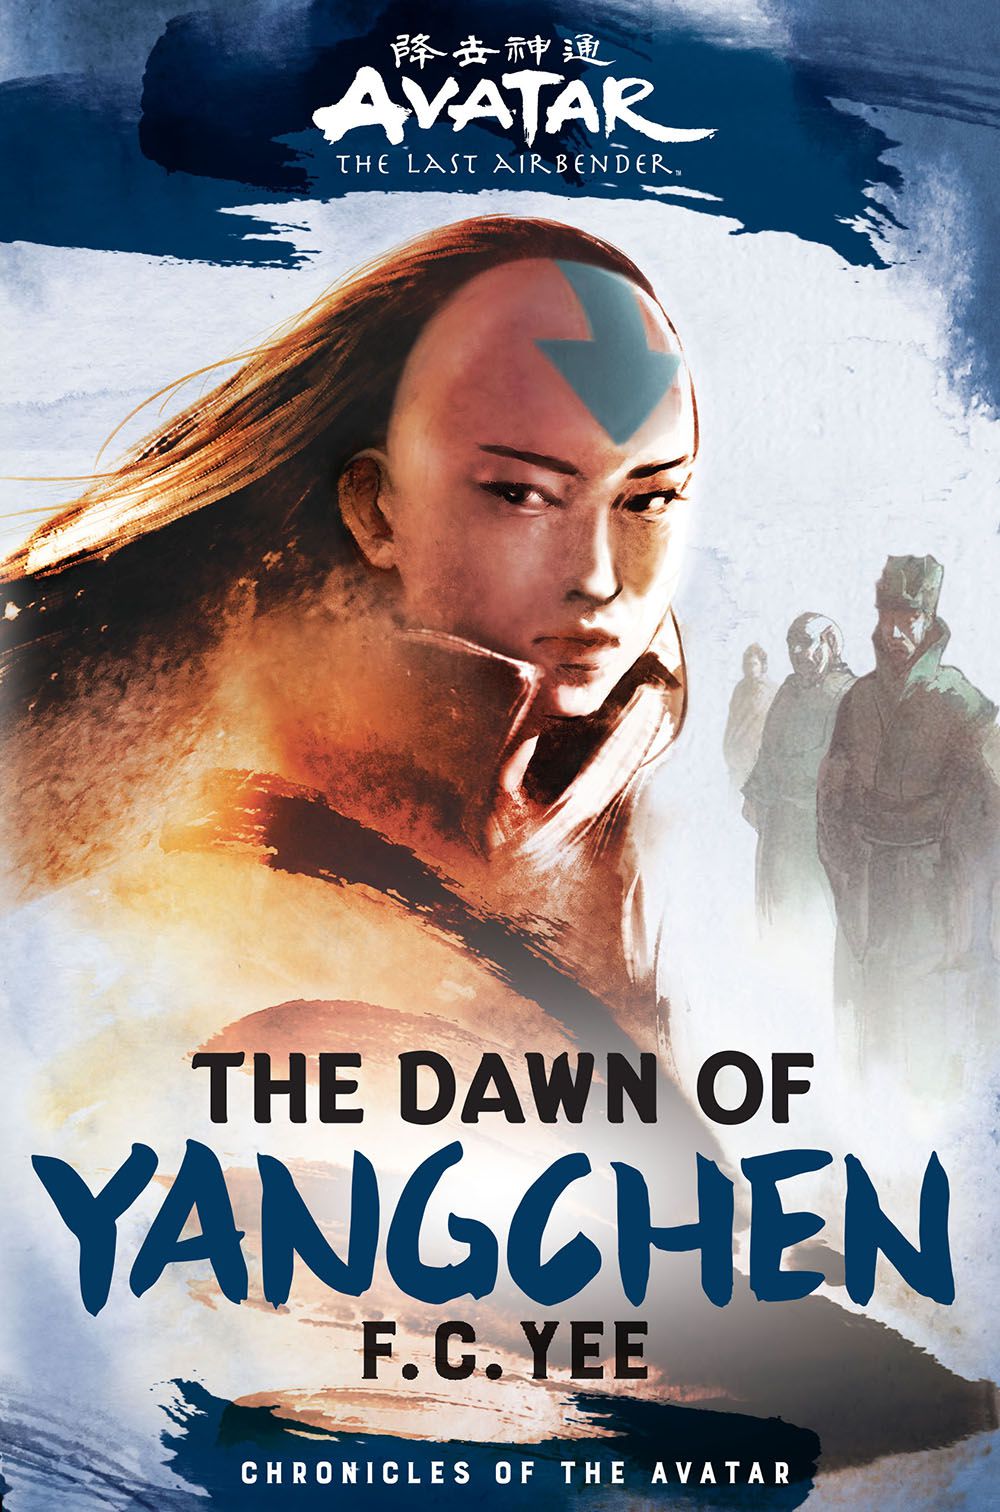 Bokomslaget till Avatar, The Last Airbender: The Dawn of Yangchen, med en kvinnlig avatar i en abstraherad mantel, med en rad tidigare avatarer bakom sig, som sträcker sig i fjärran